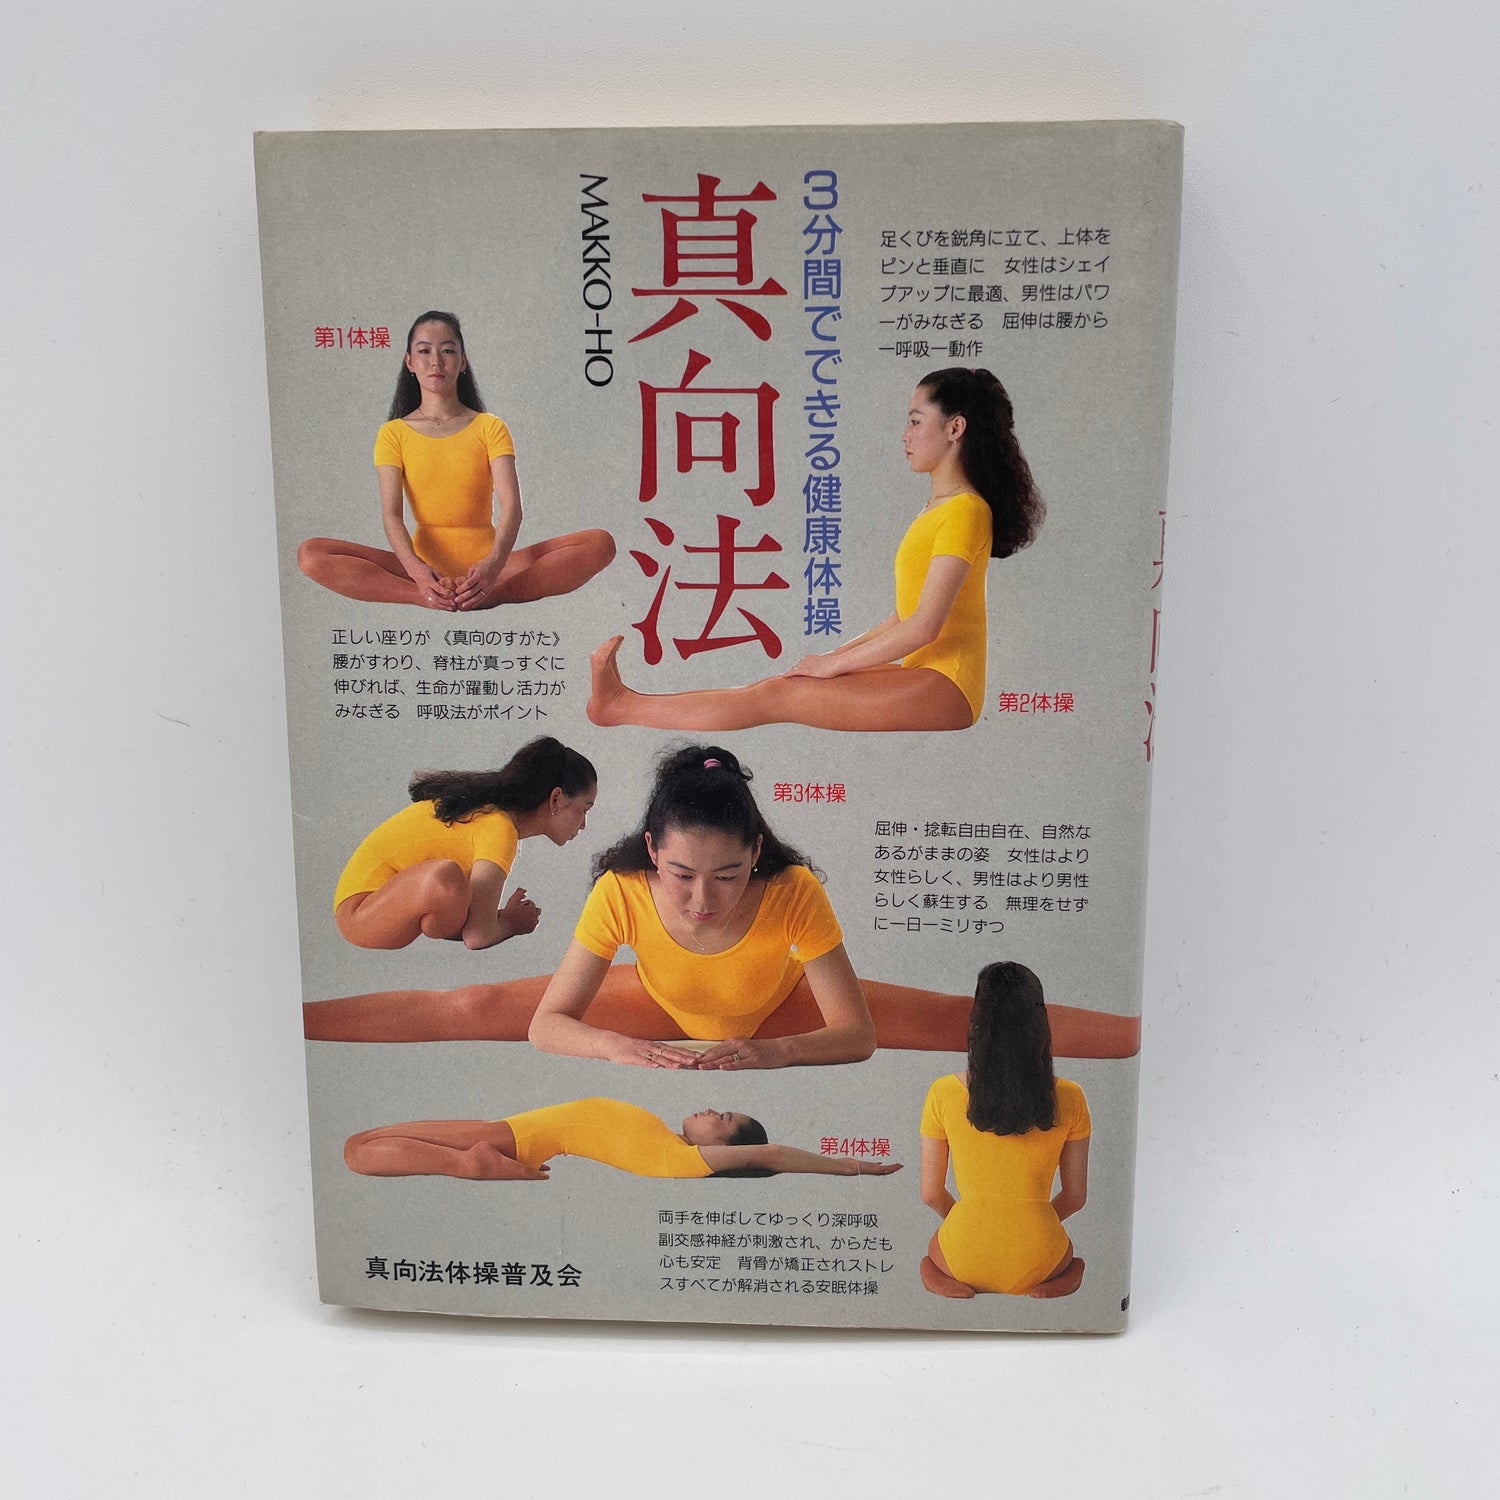 Libro del programa de ejercicios de 3 minutos de Makko Hou (seminuevo)